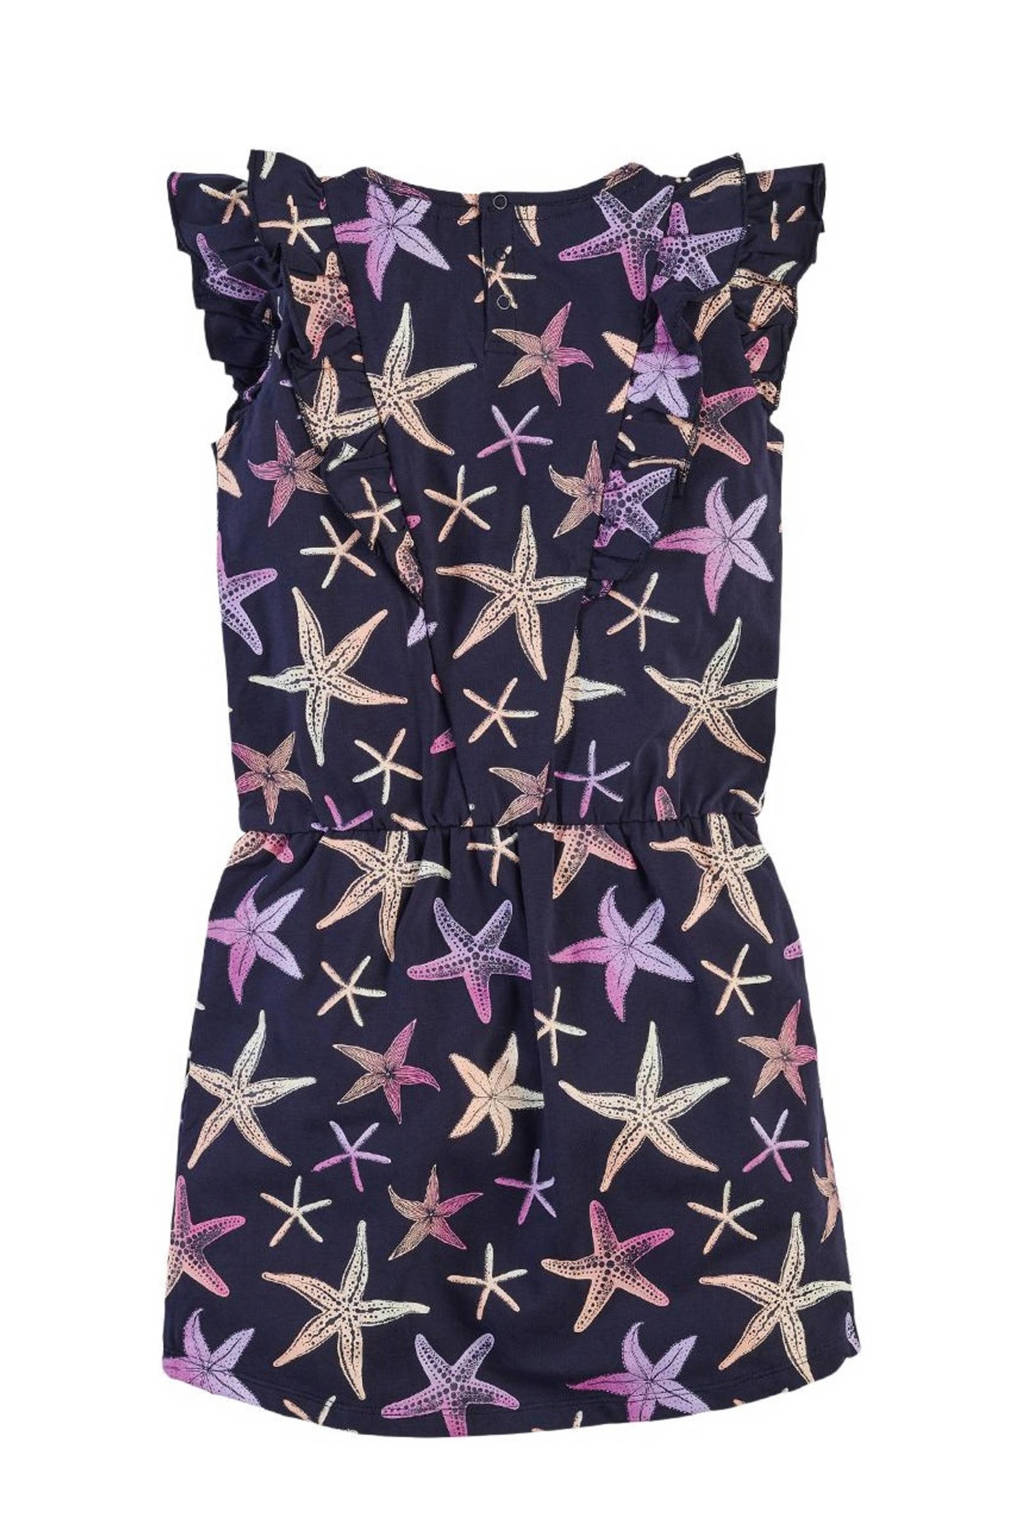 Maken binding Frons Z8 jurk Camille met sterren en ruches donkerblauw | wehkamp